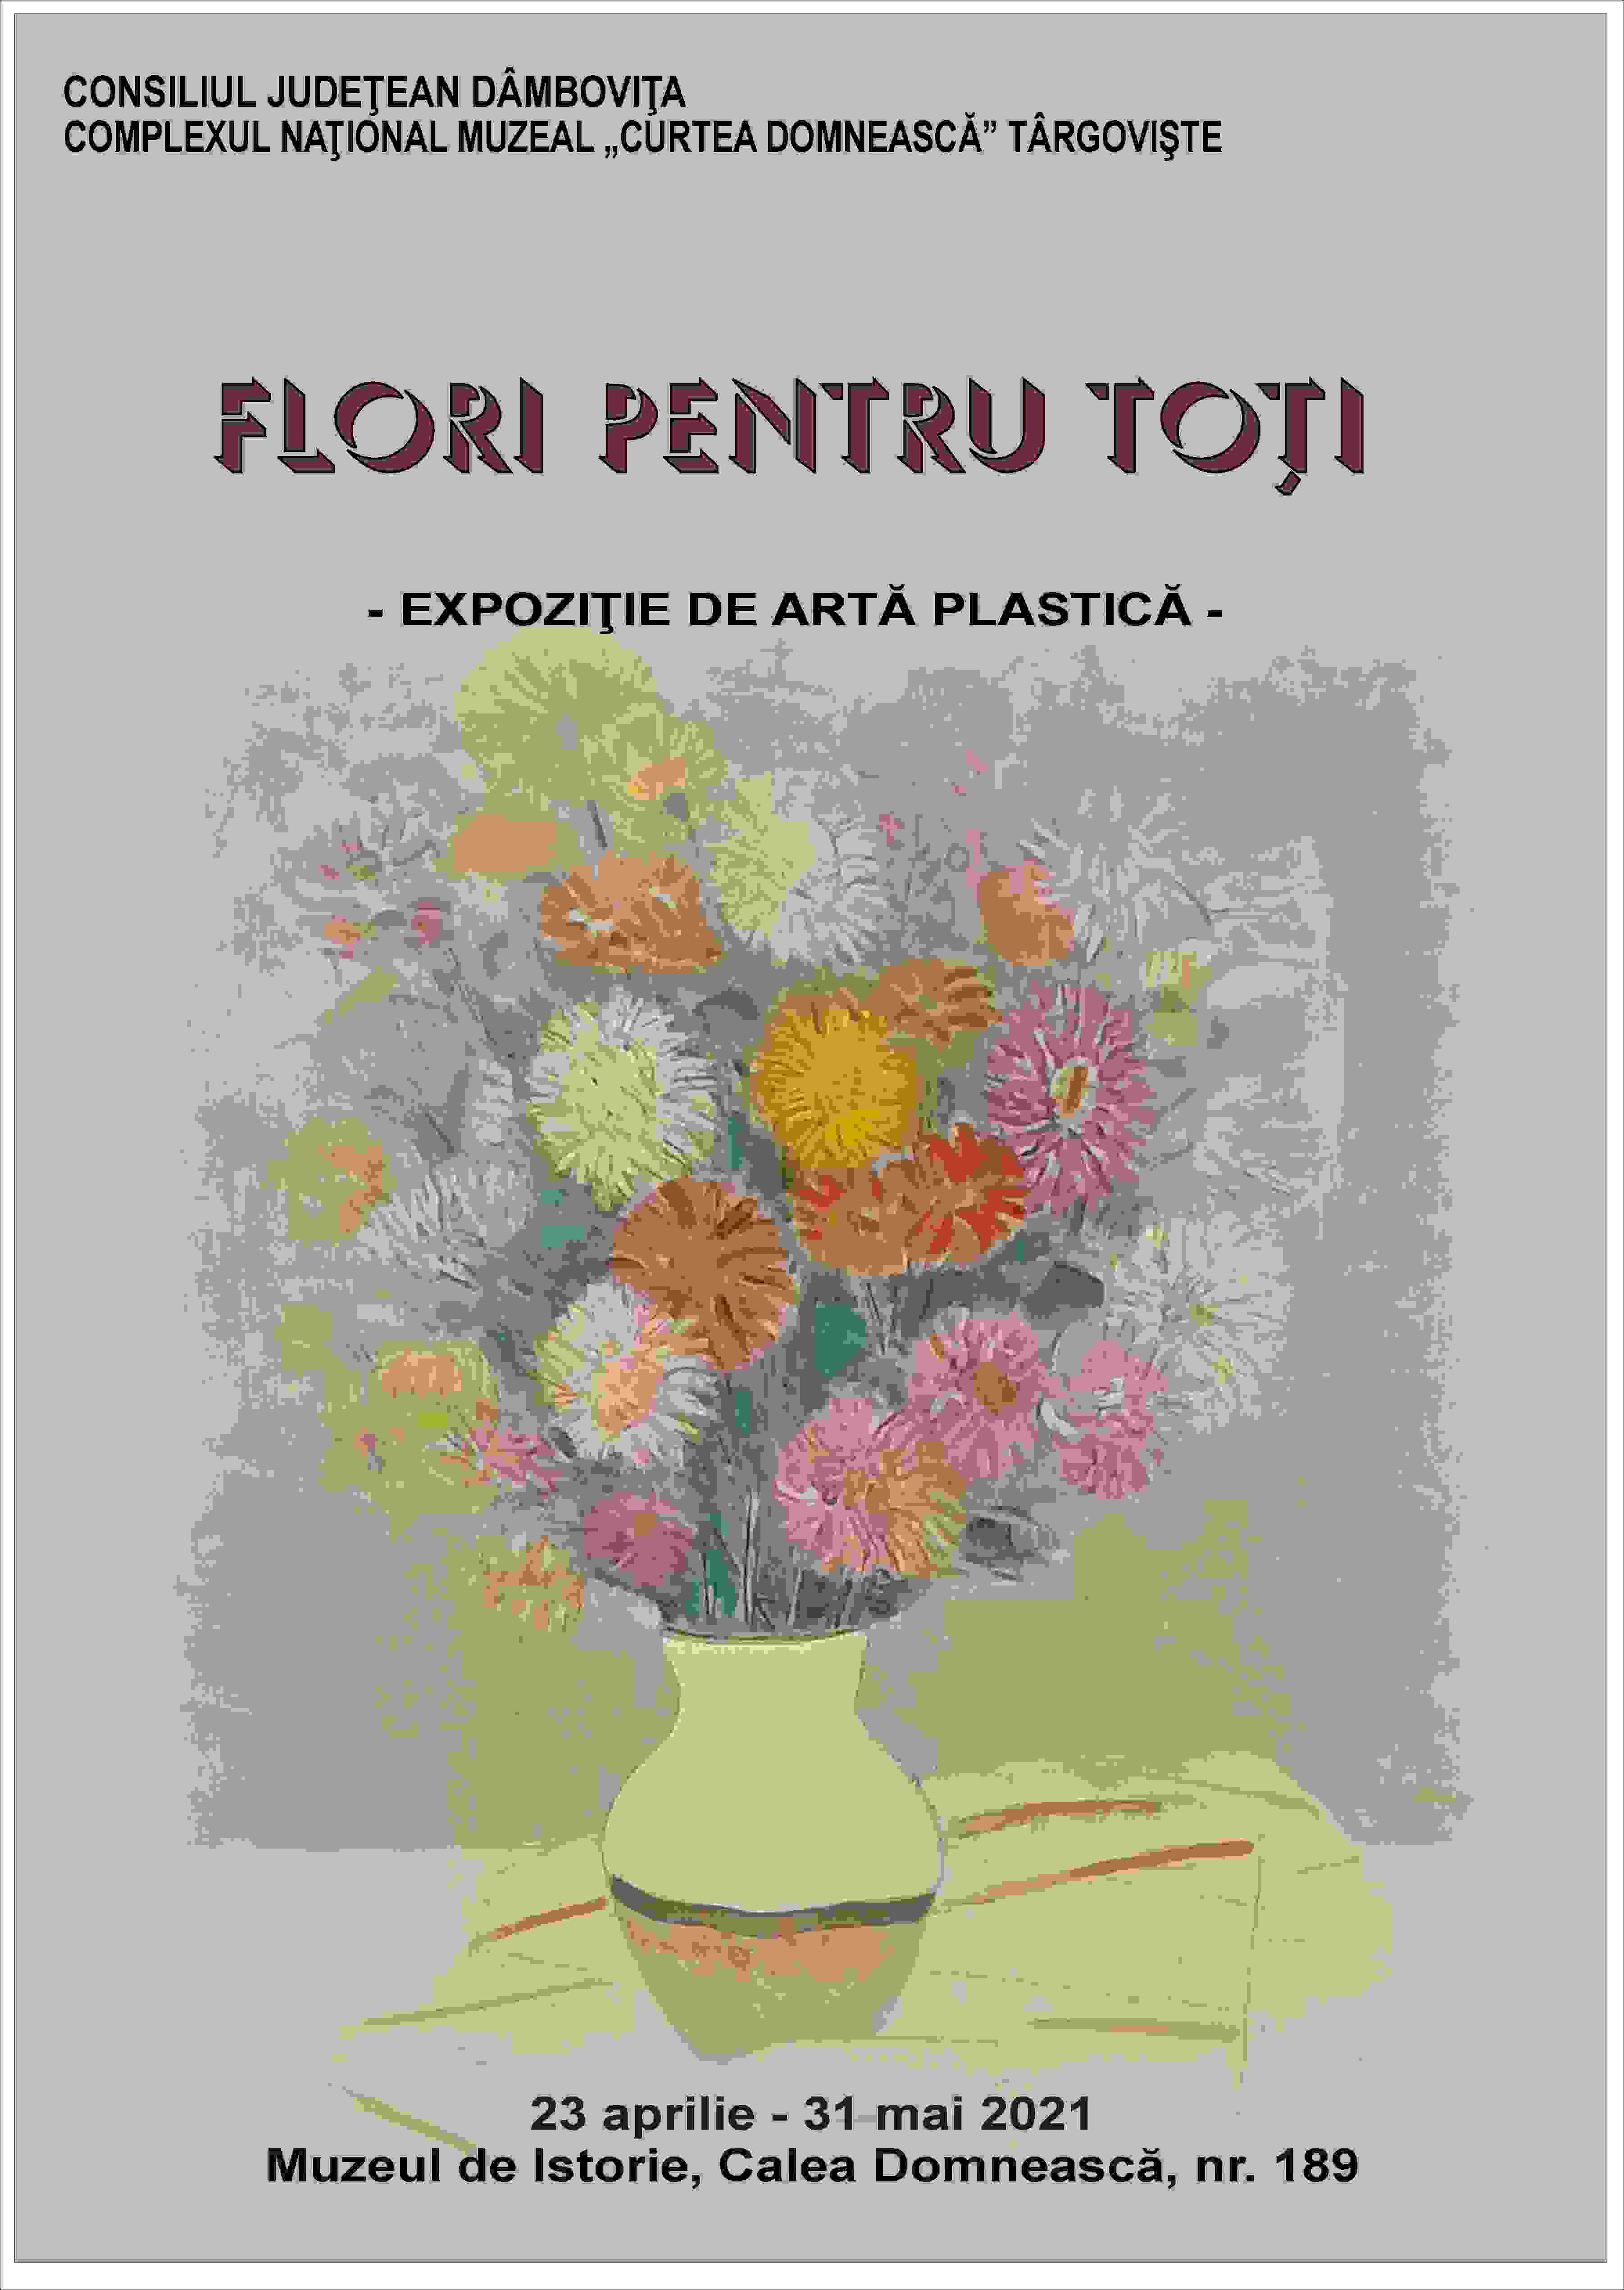  Expoziţia de artă plastică ”Flori pentru toţi”